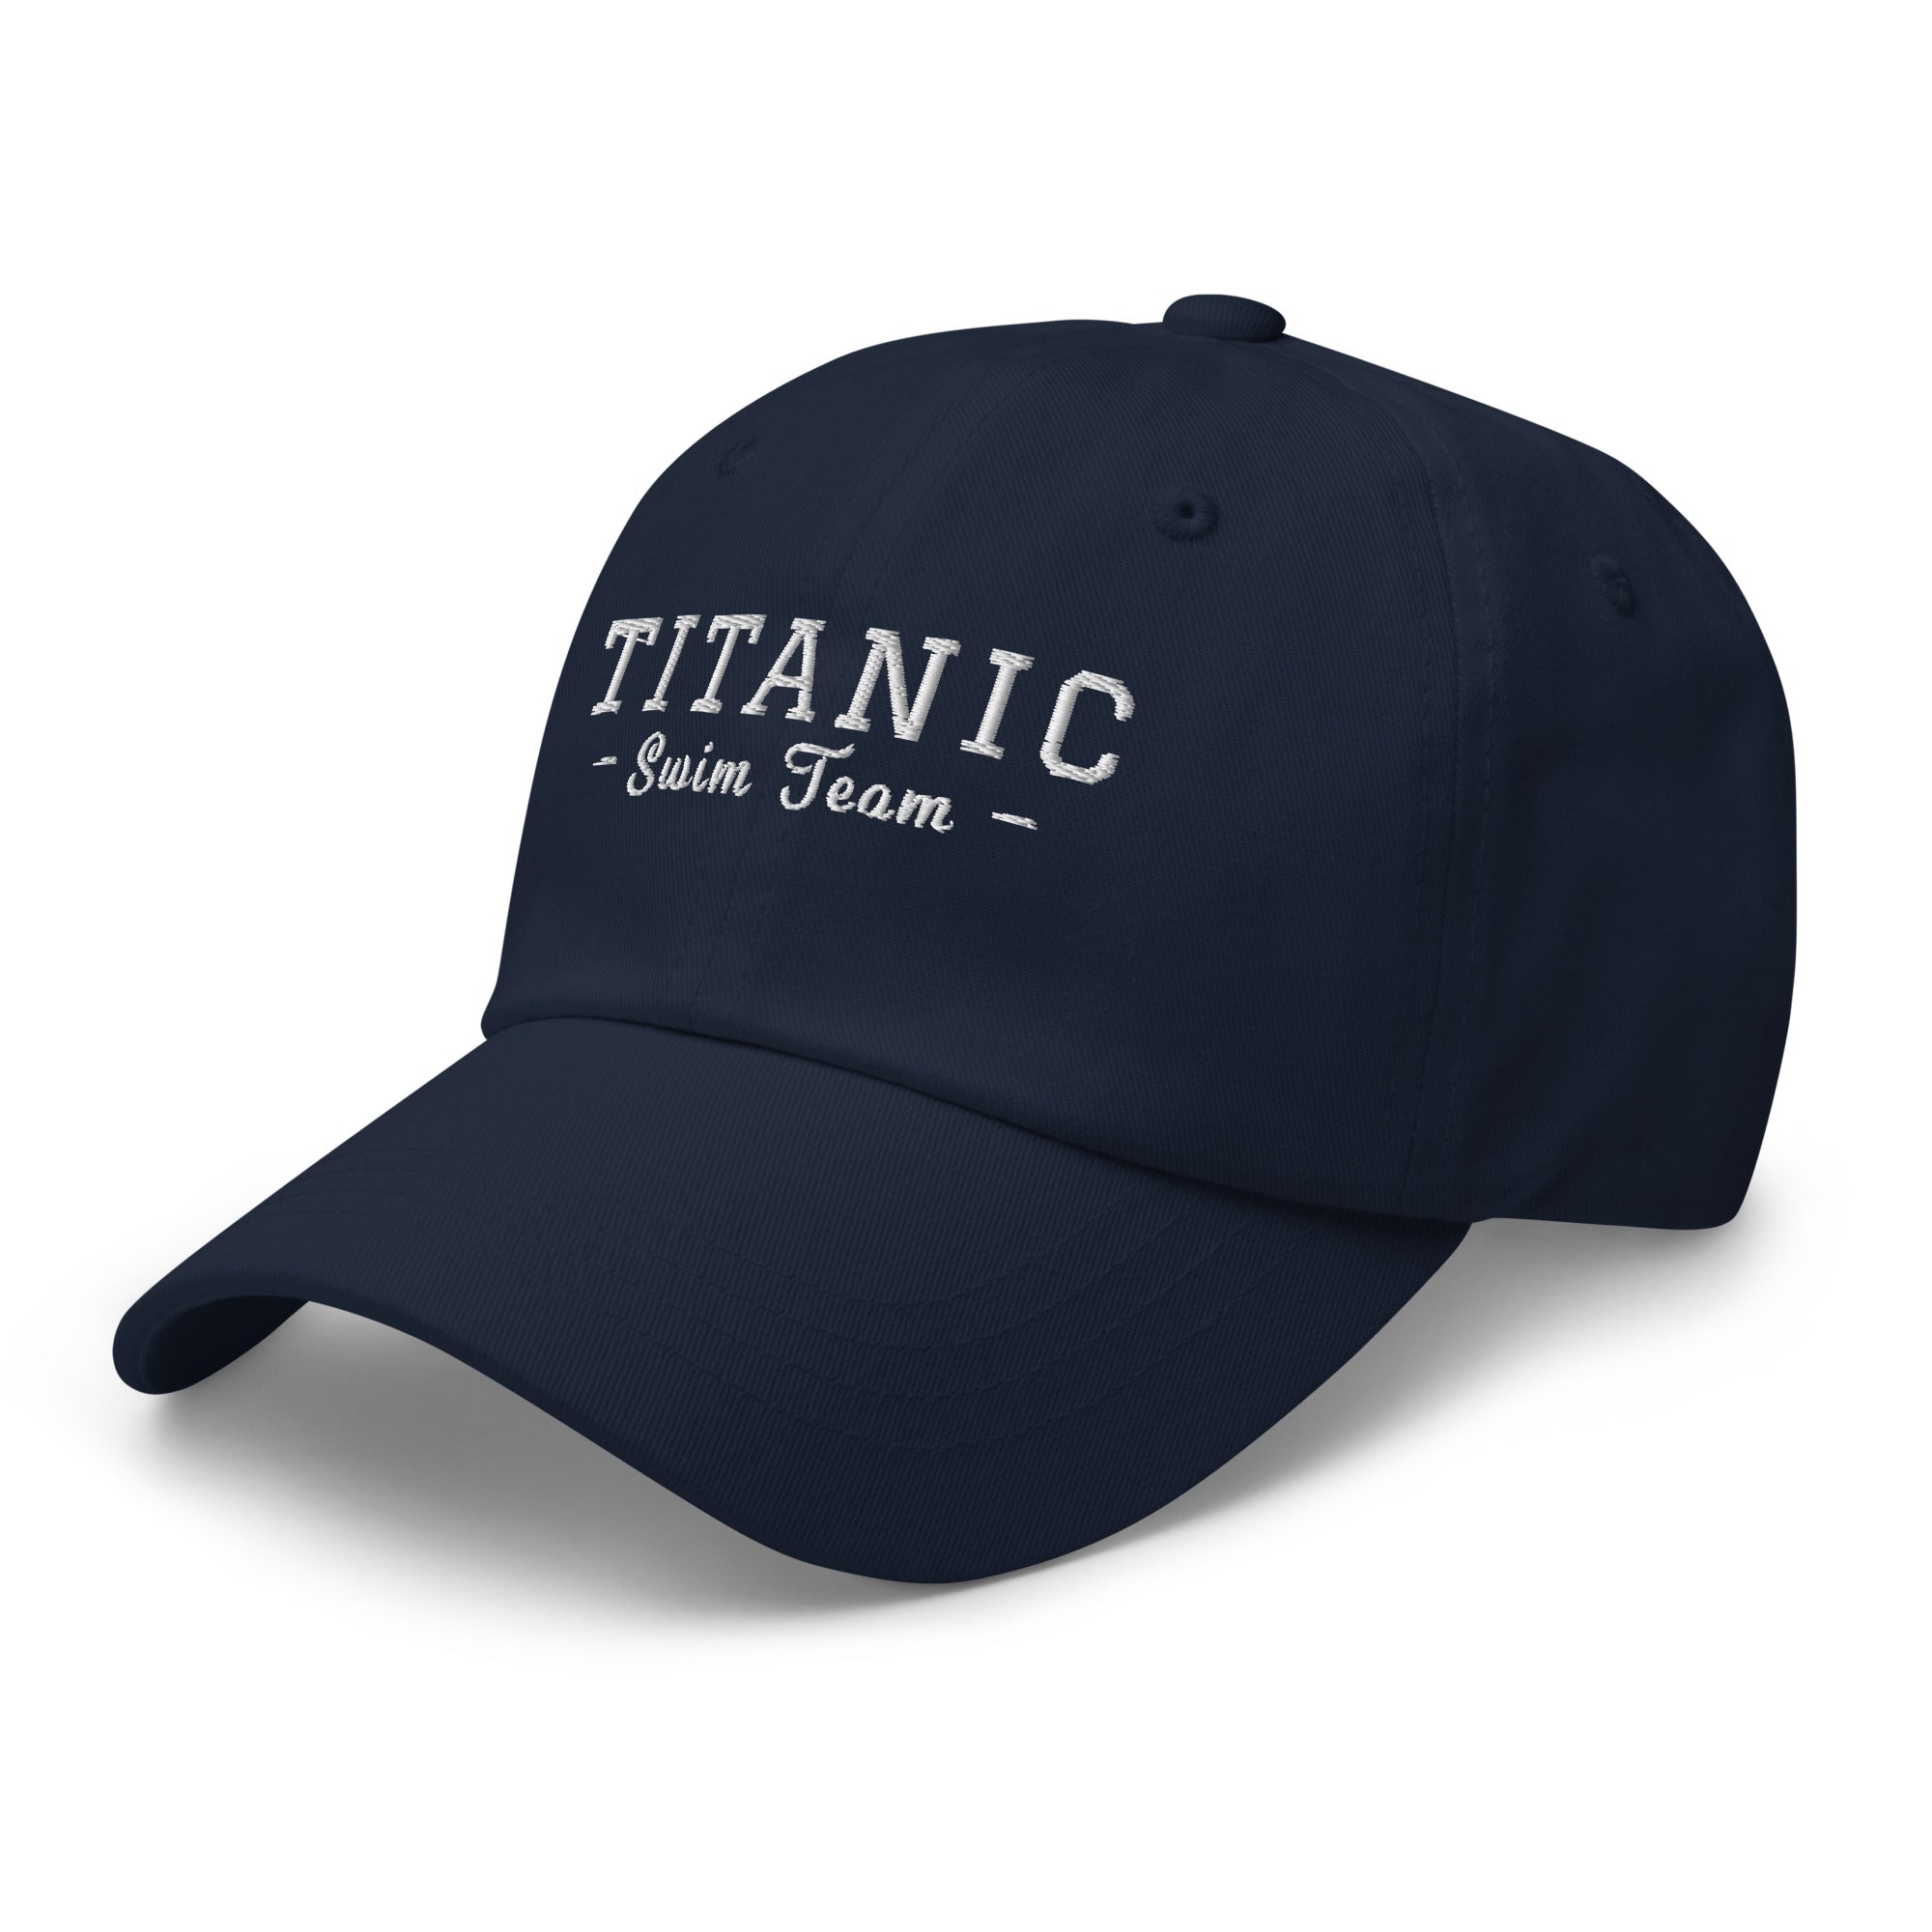 Titanic Swim Team Dad hat